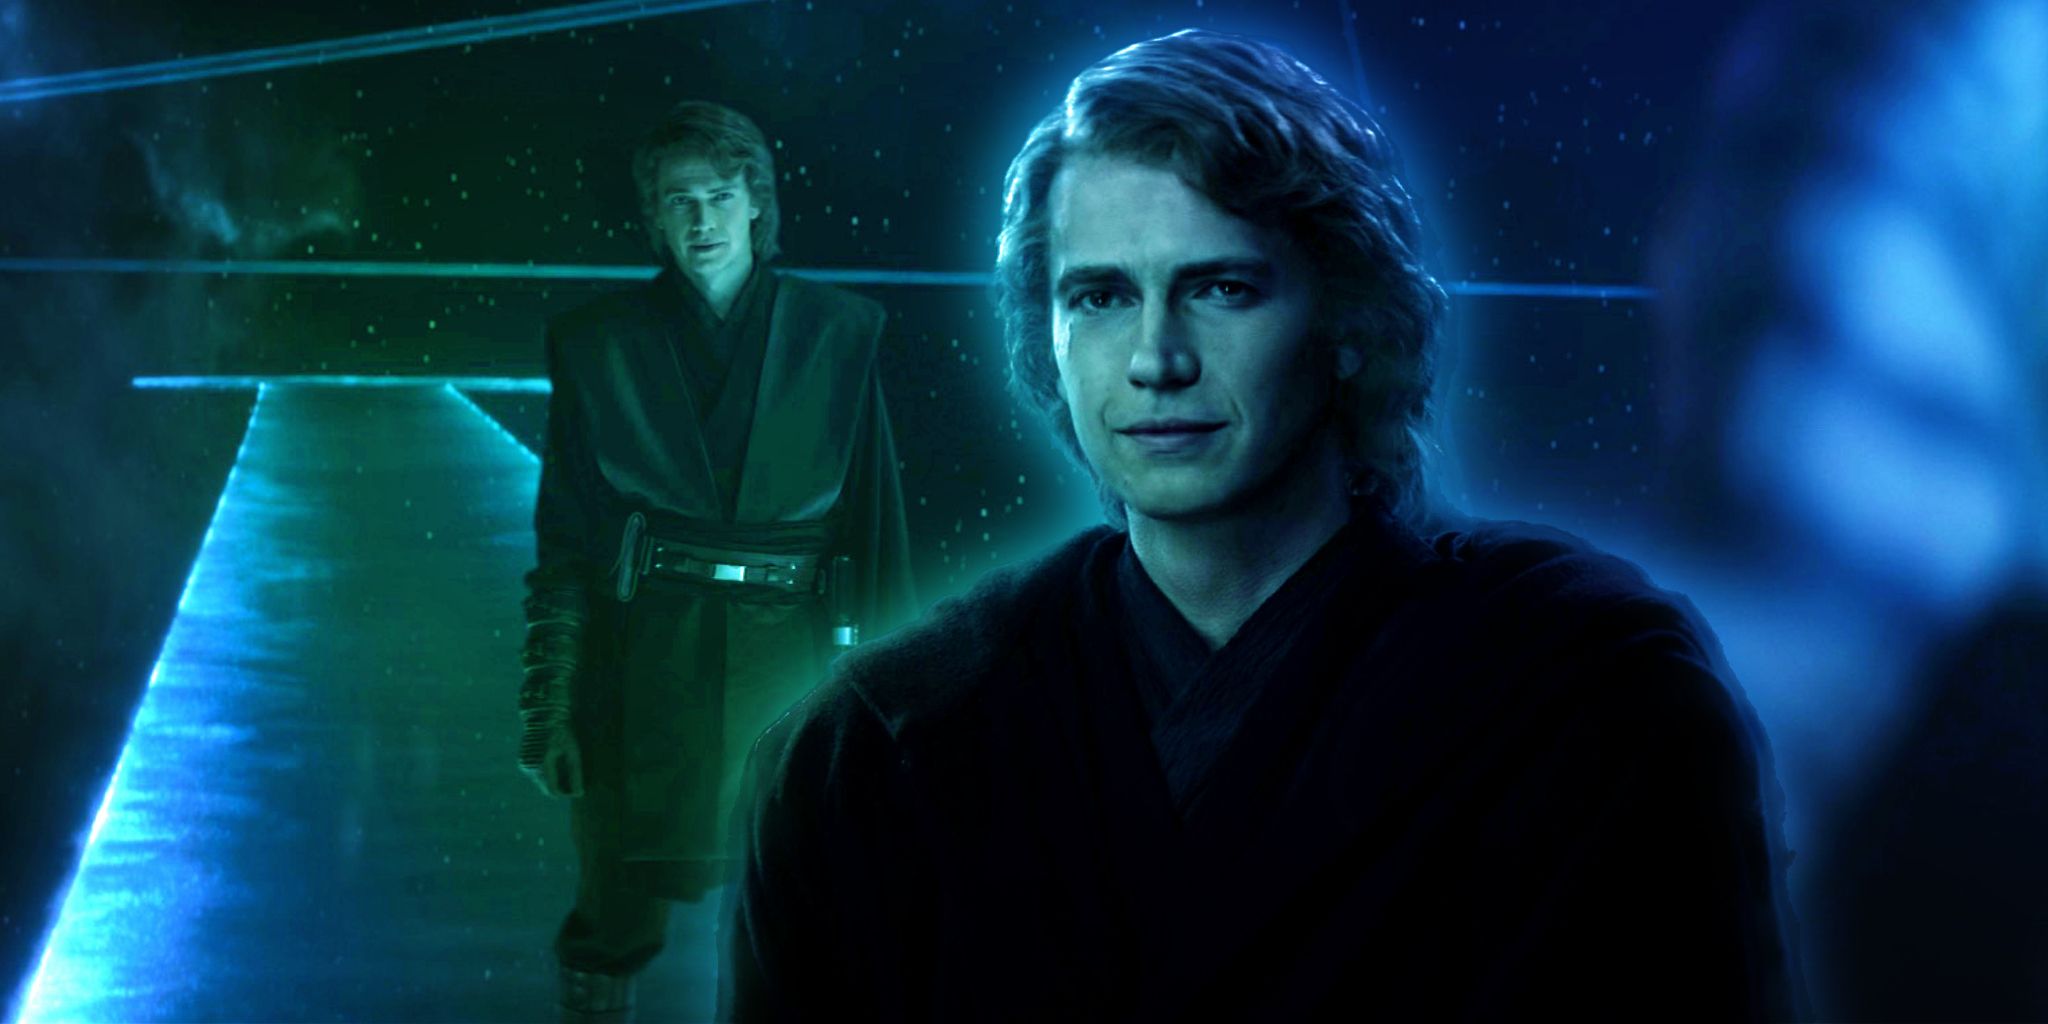 El regreso de Anakin Skywalker de Hayden Christensen era un “artículo de la lista de deseos” que ni siquiera sabía que tenía